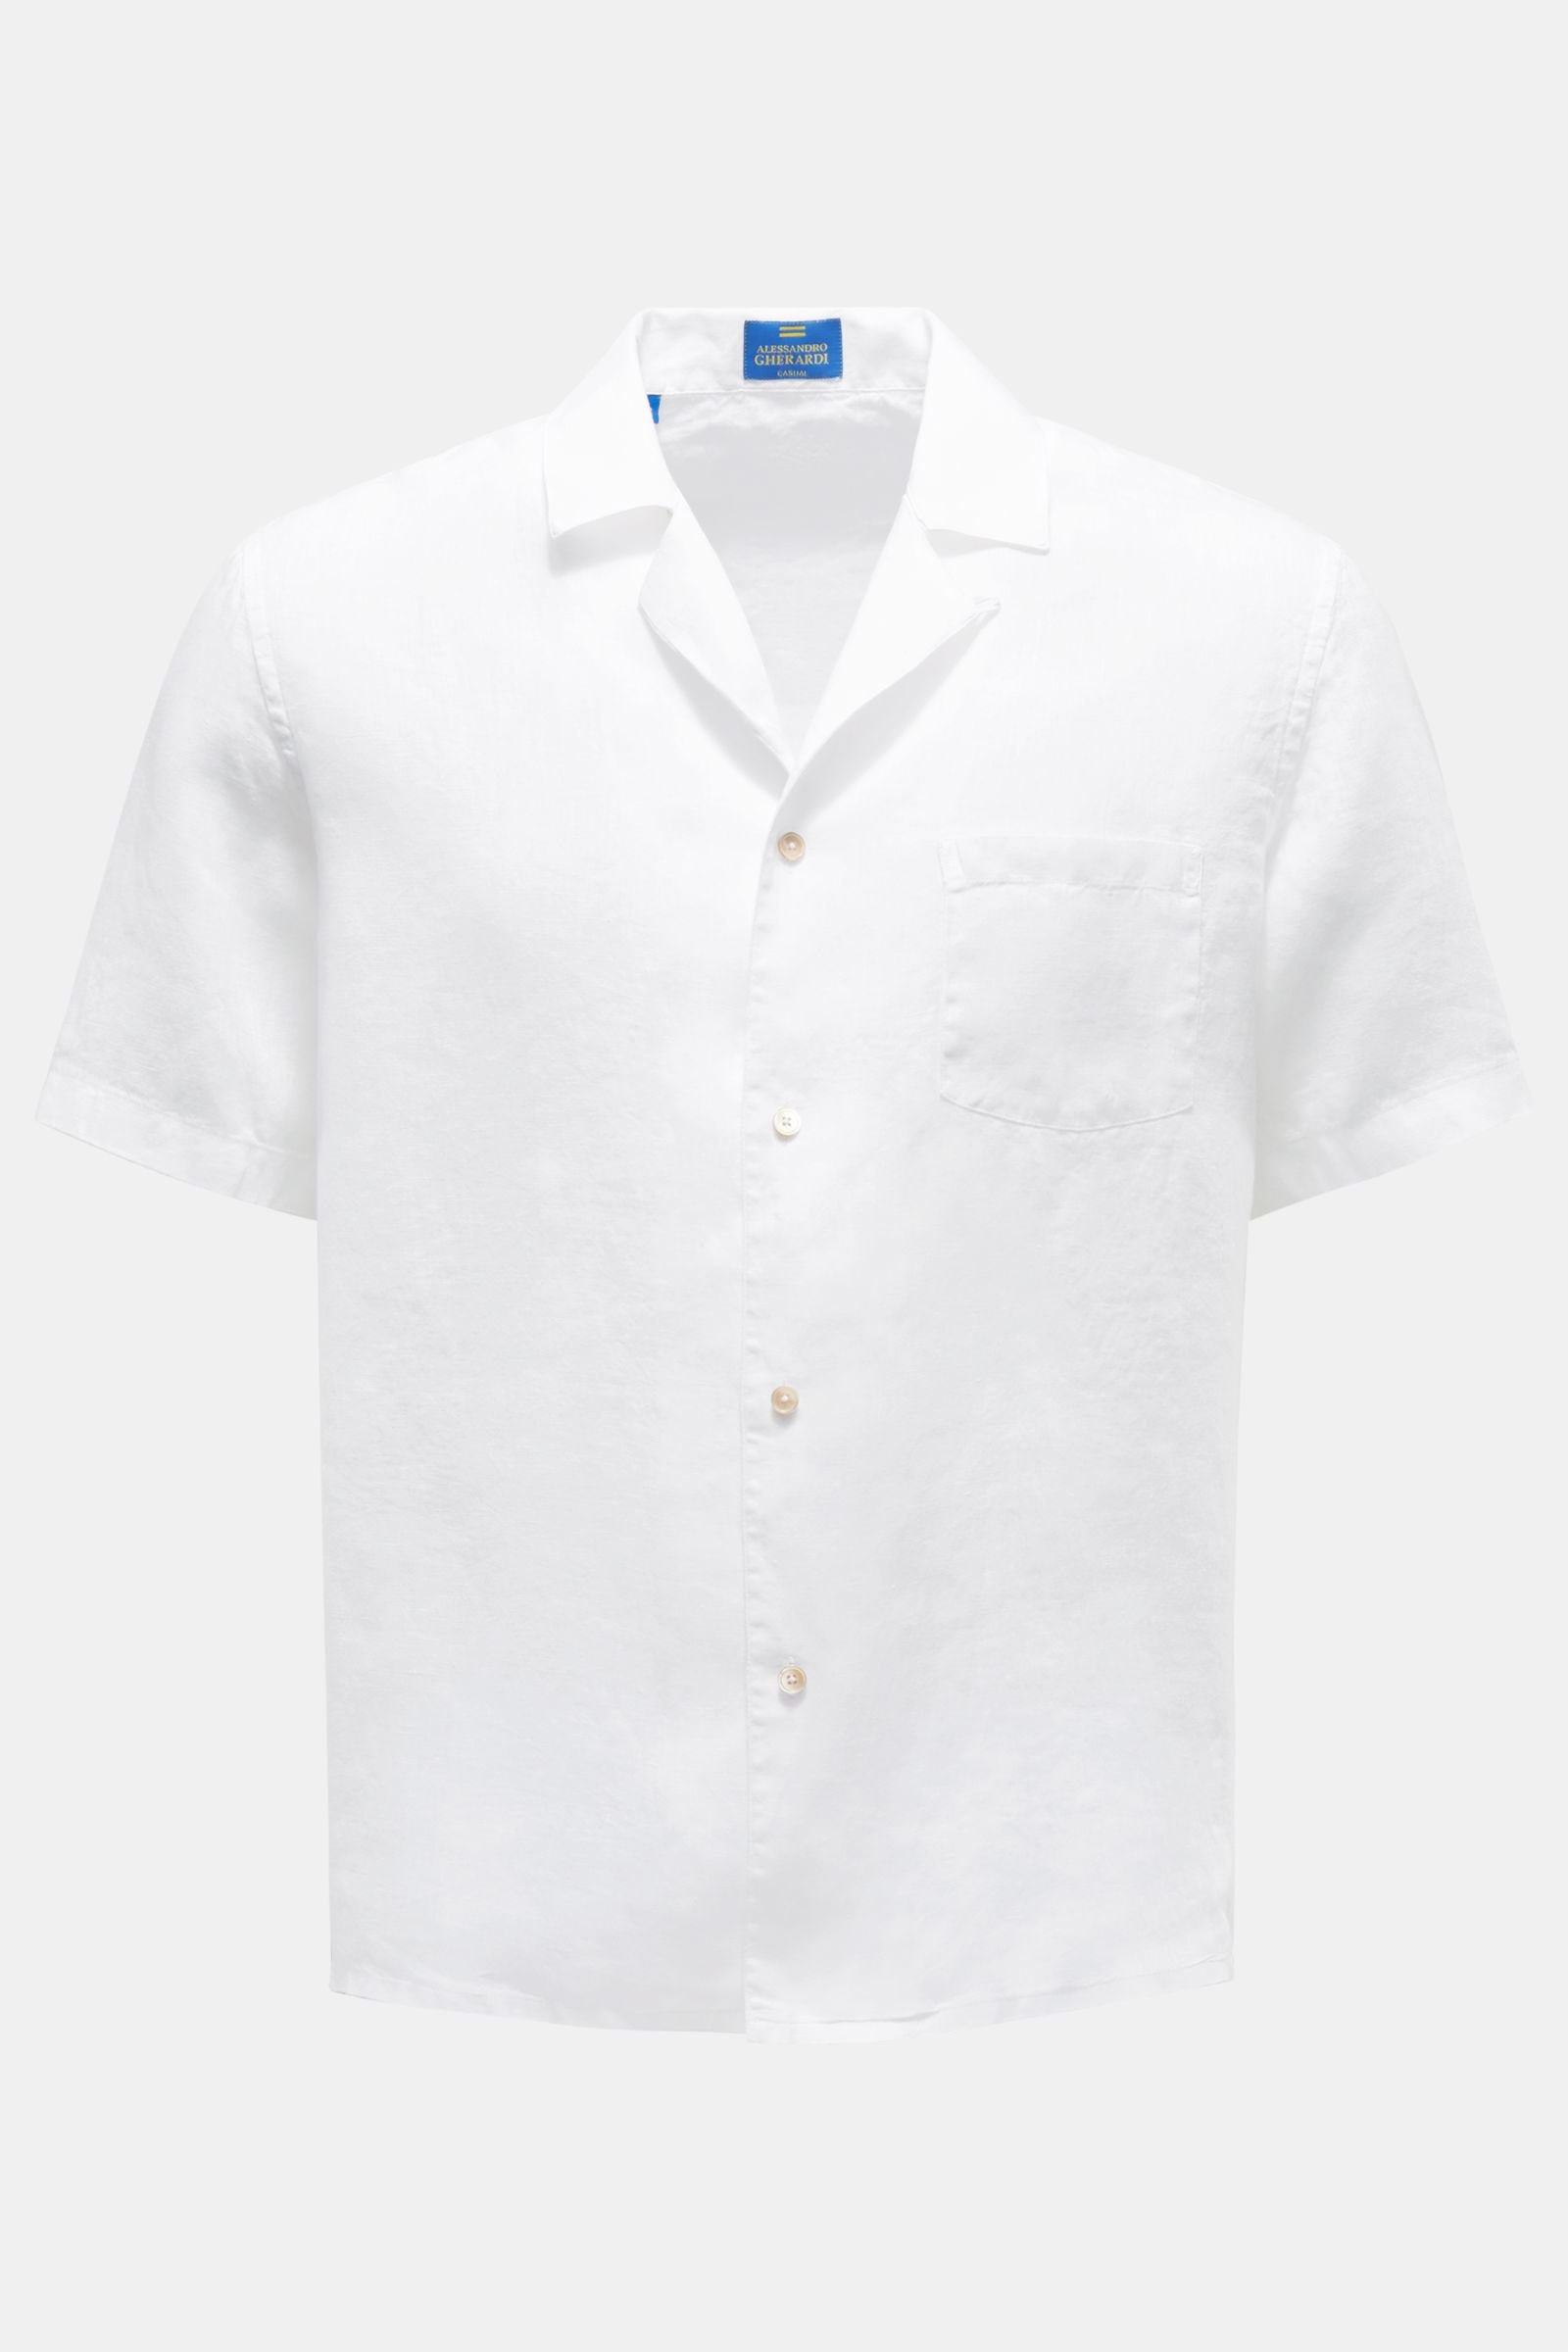 Leinen-Kurzarmhemd 'Miami' Kubanischer Kragen weiß